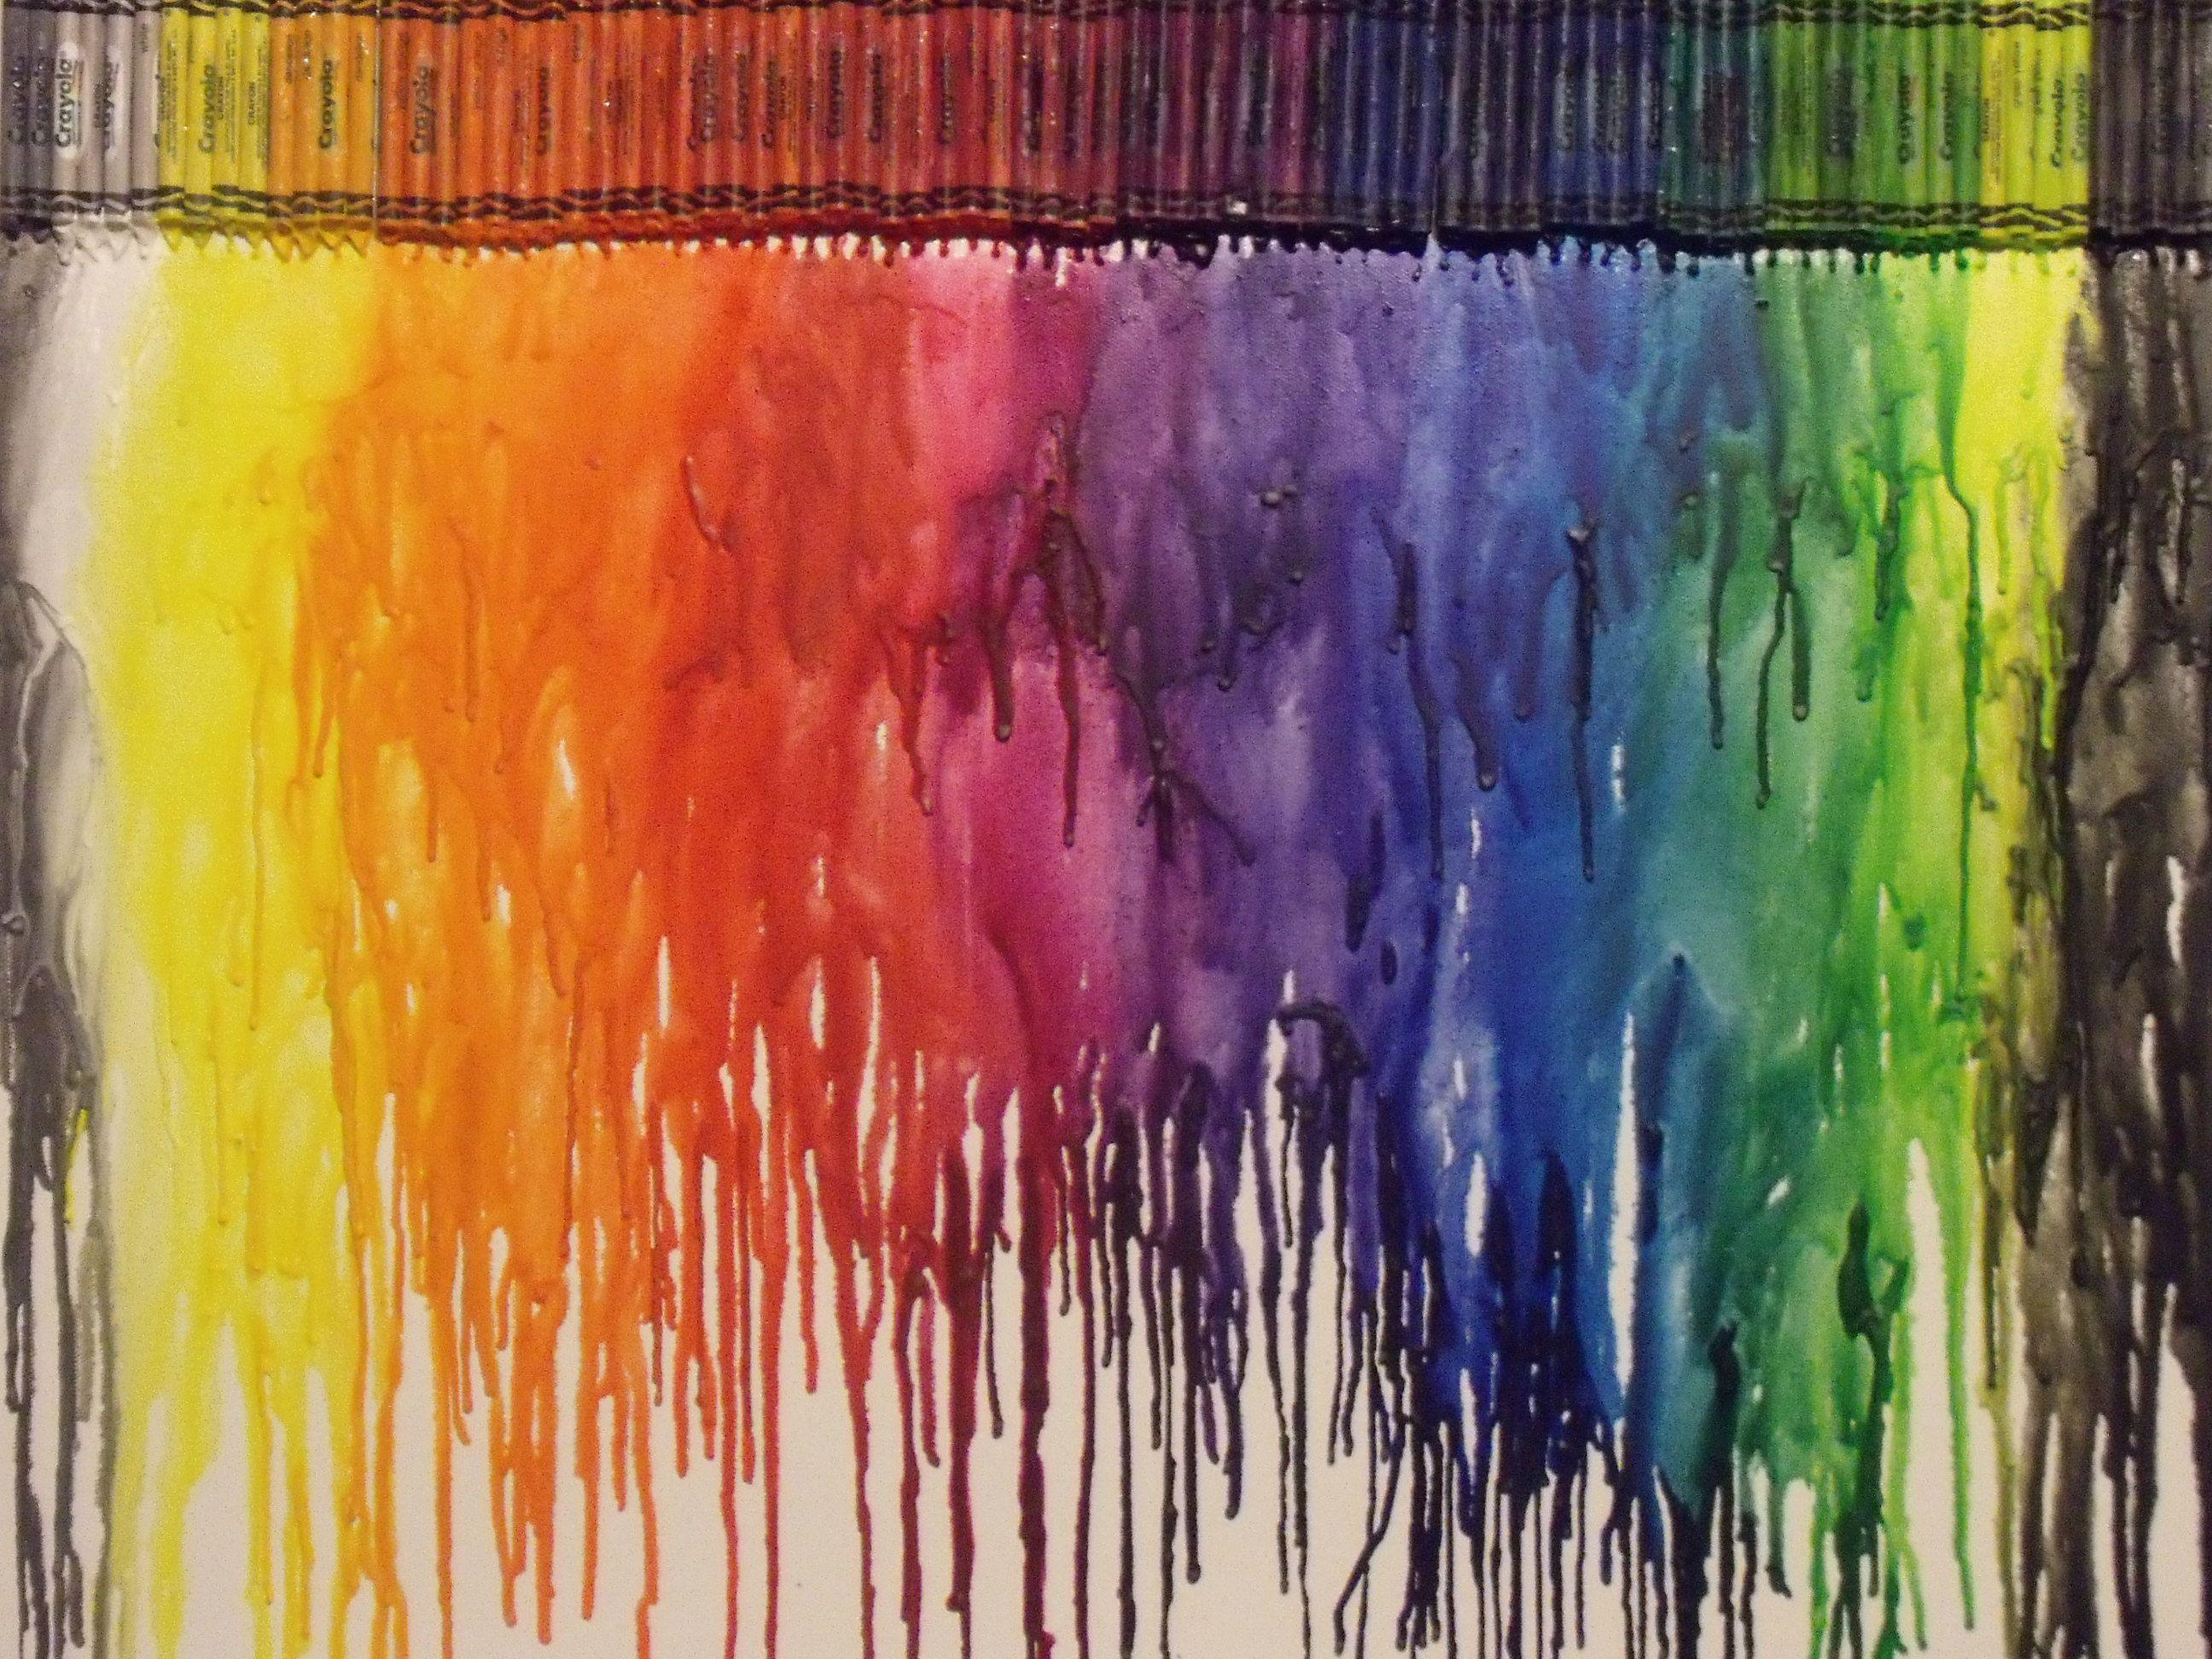 melting crayon background